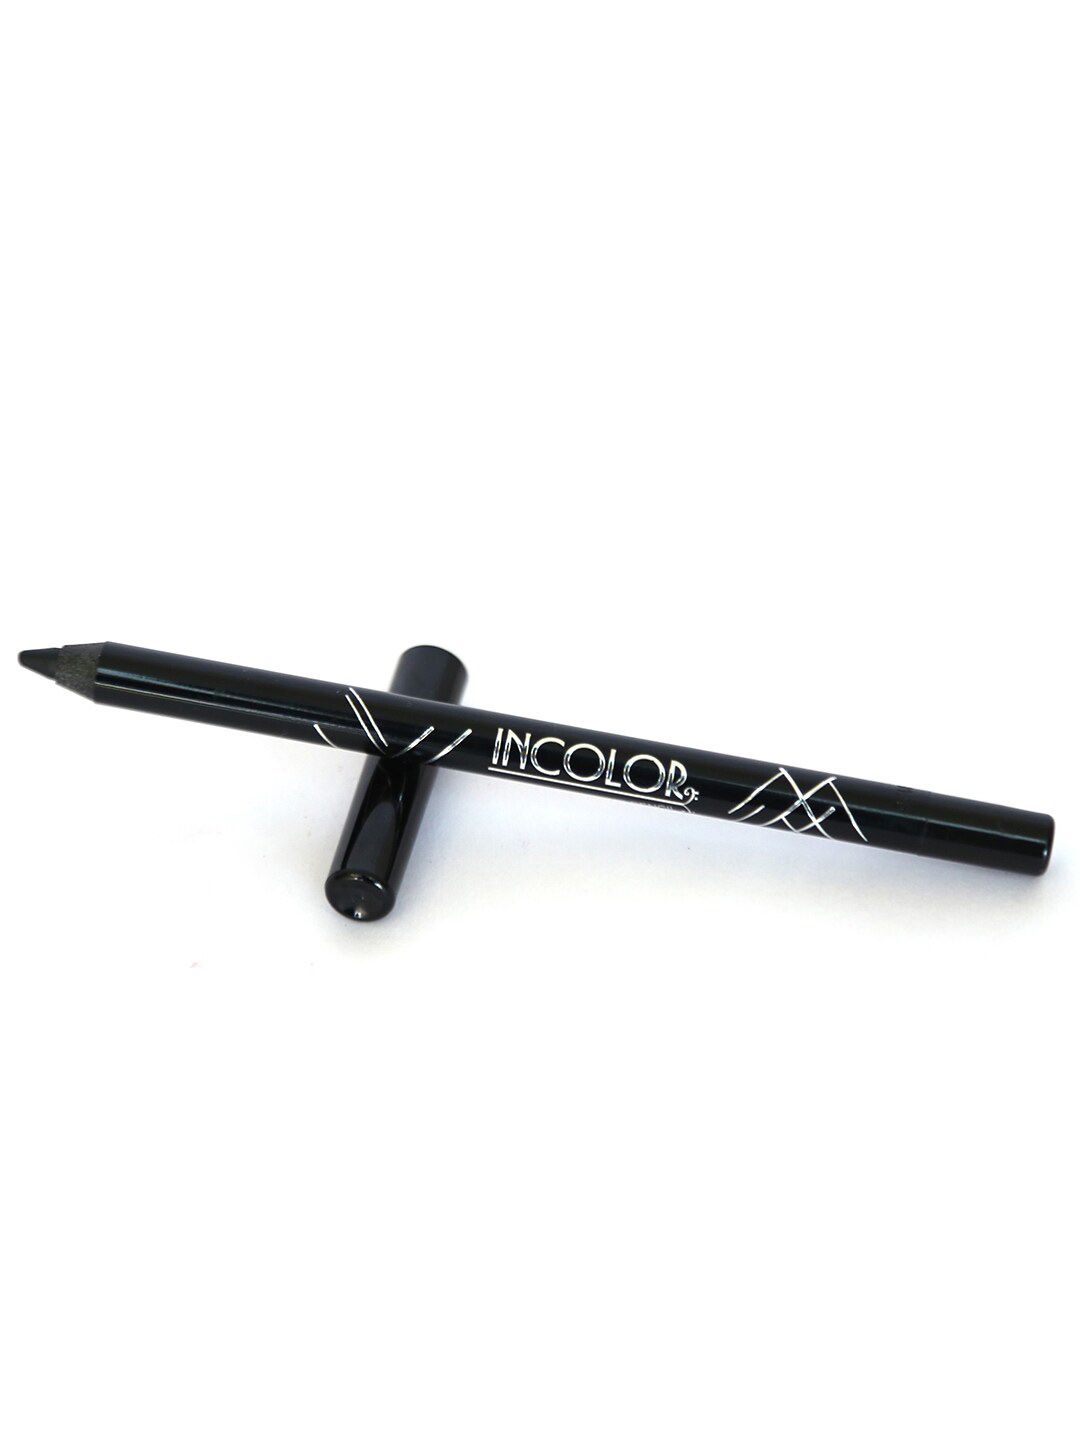 INCOLOR Glide Gel Eye Pencil - Jet Black 1.2 g Price in India